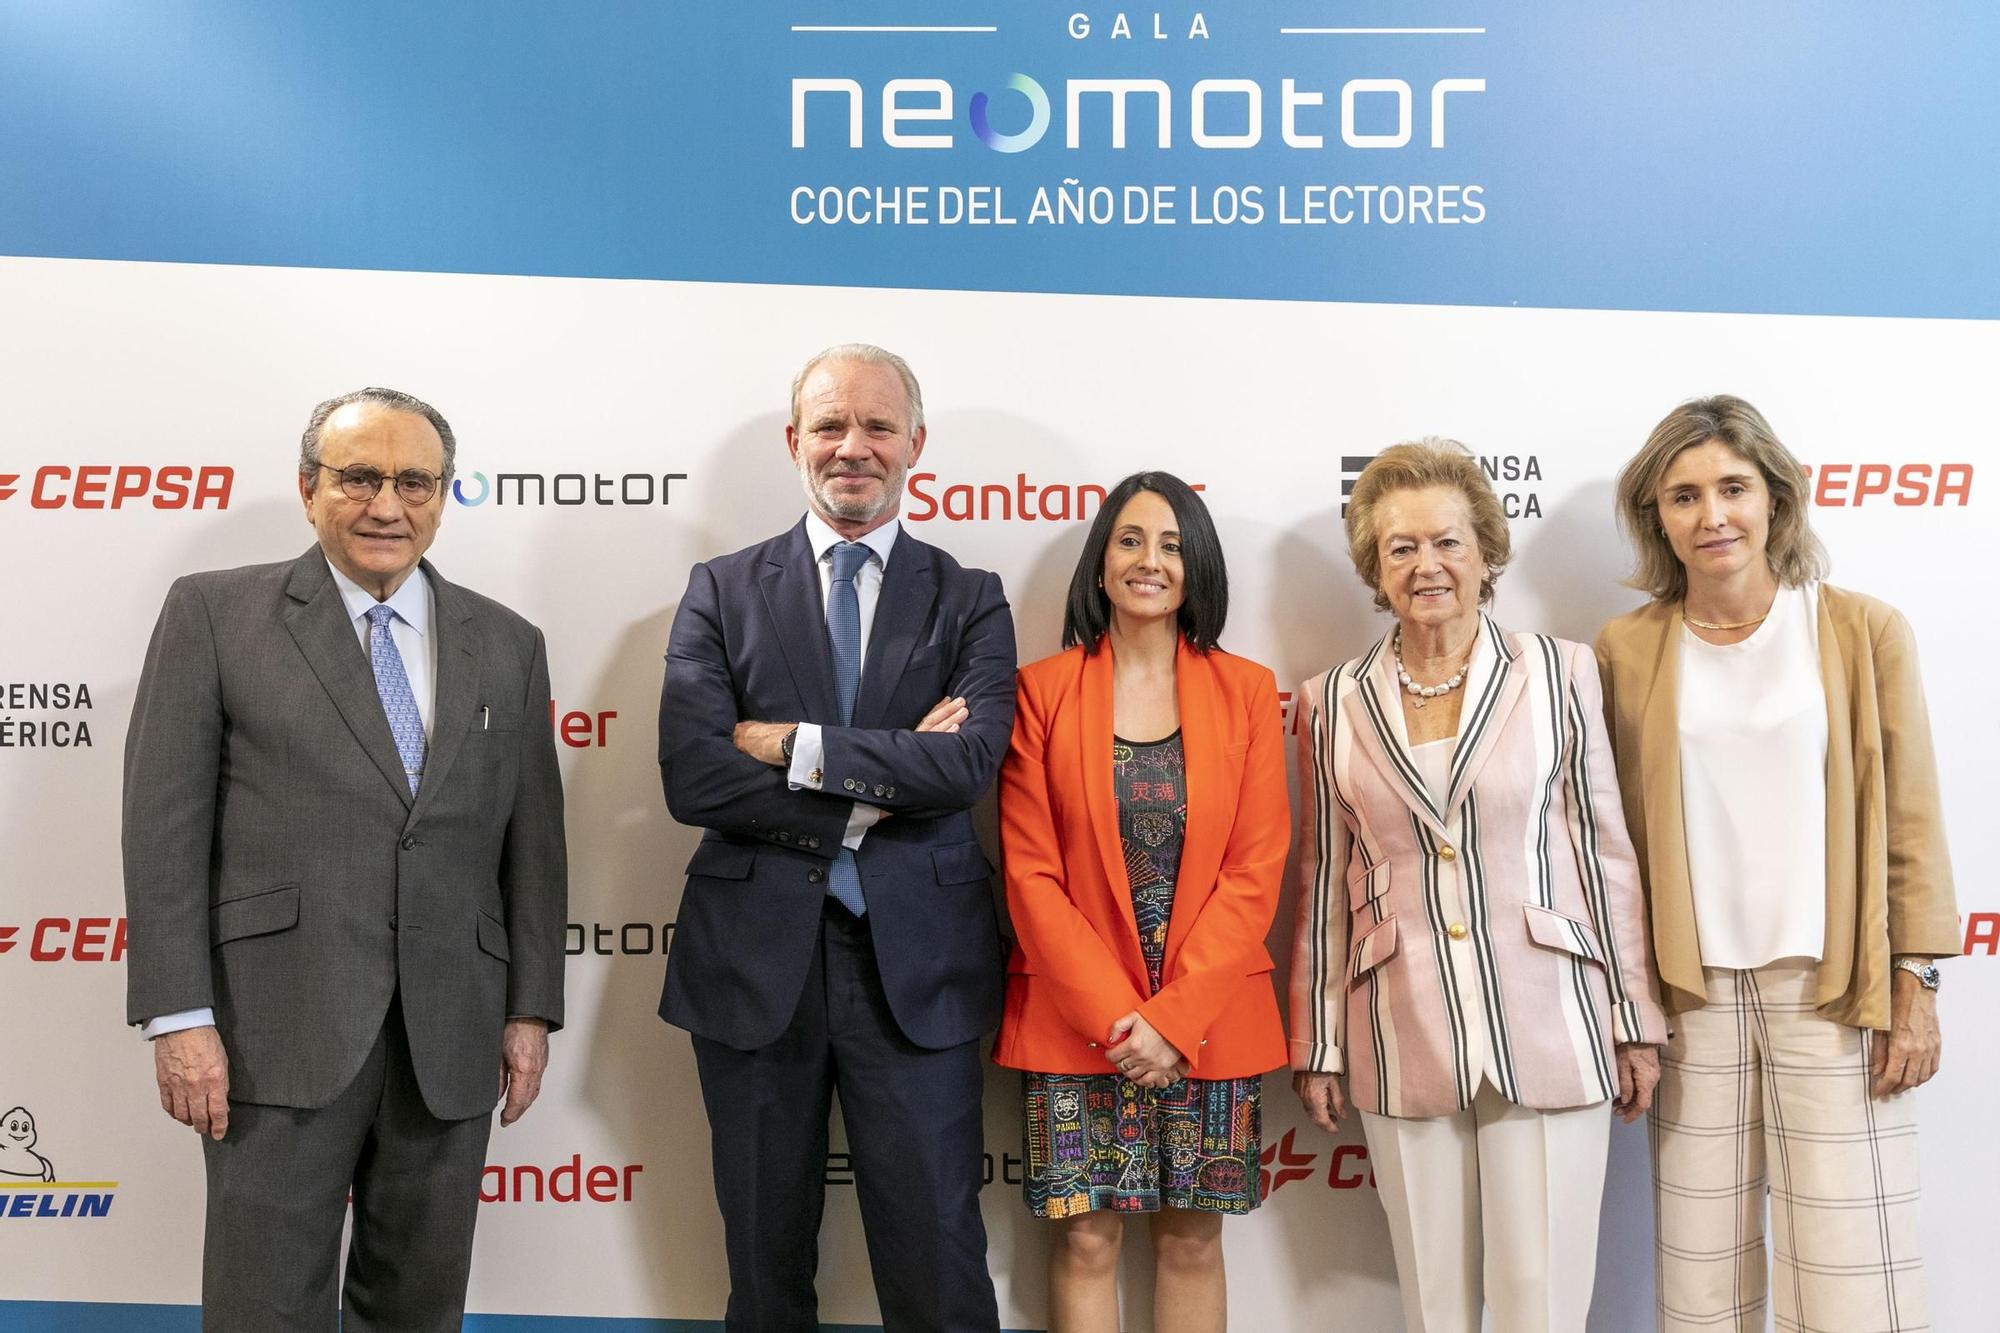 La Gala Neomotor – Coche del Año de los Lectores en Madrid, en imágenes